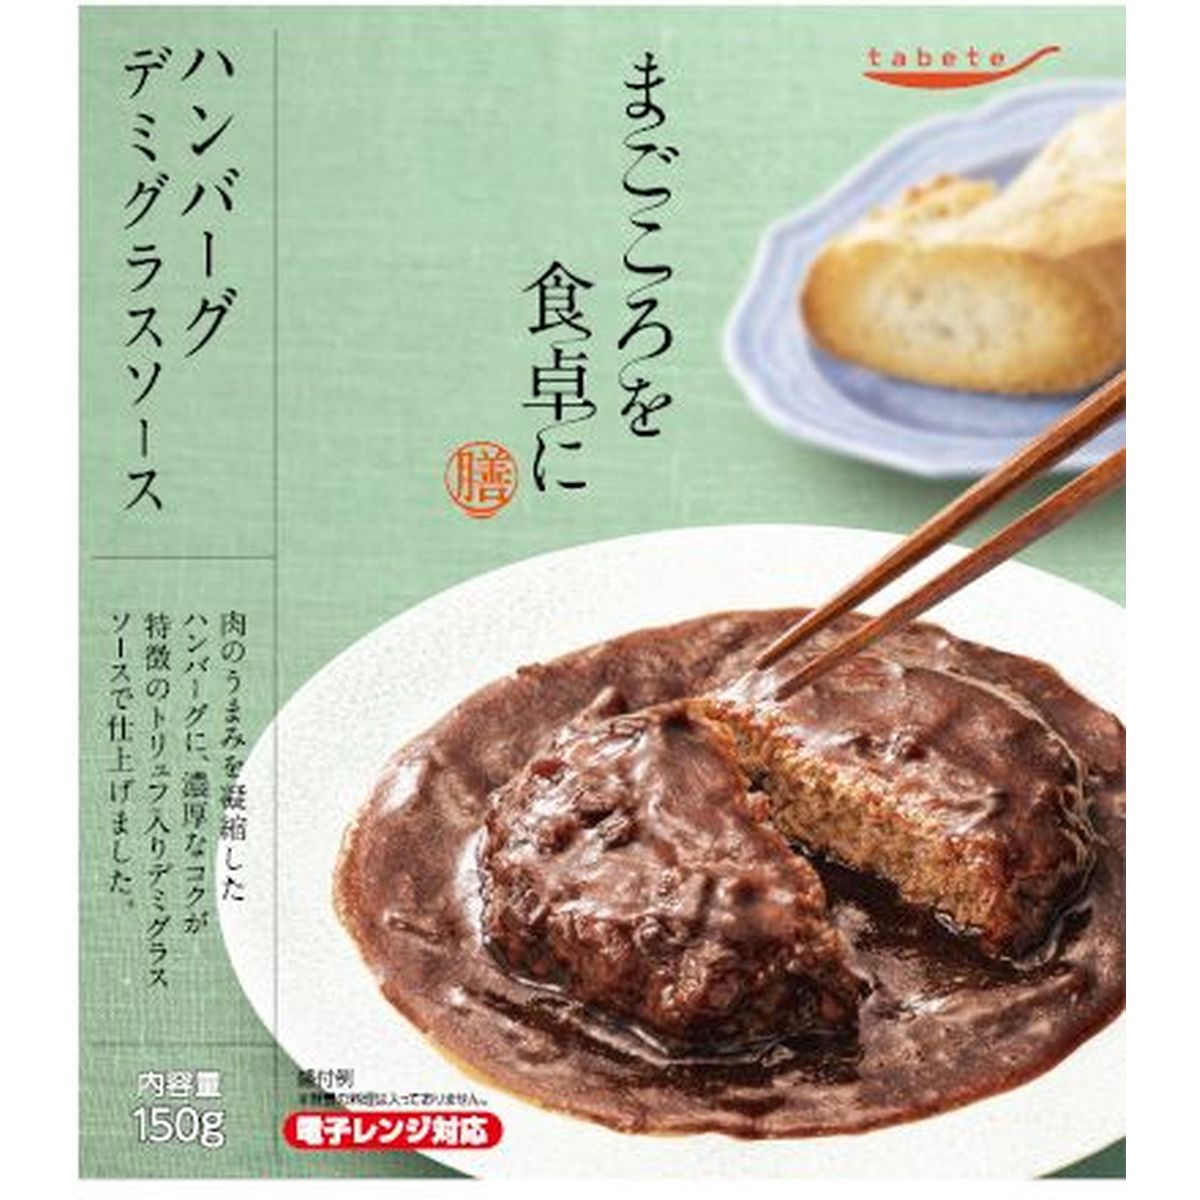 【30個入リ】tabeteマゴコロヲ食卓ニ 膳 ハンバーグデミグラスソース 150g